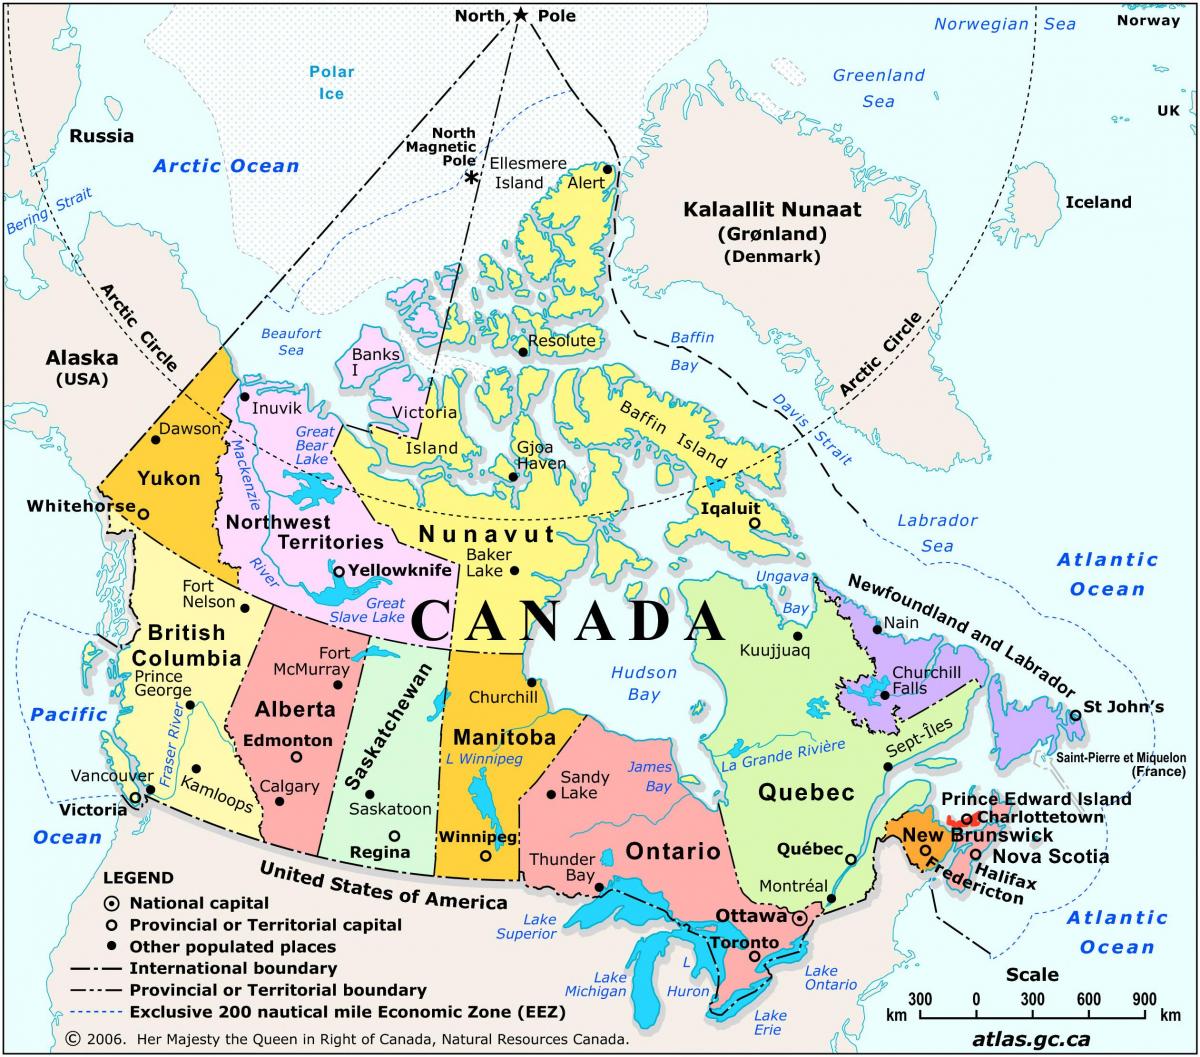 Mapa do Canadá com as principais cidades